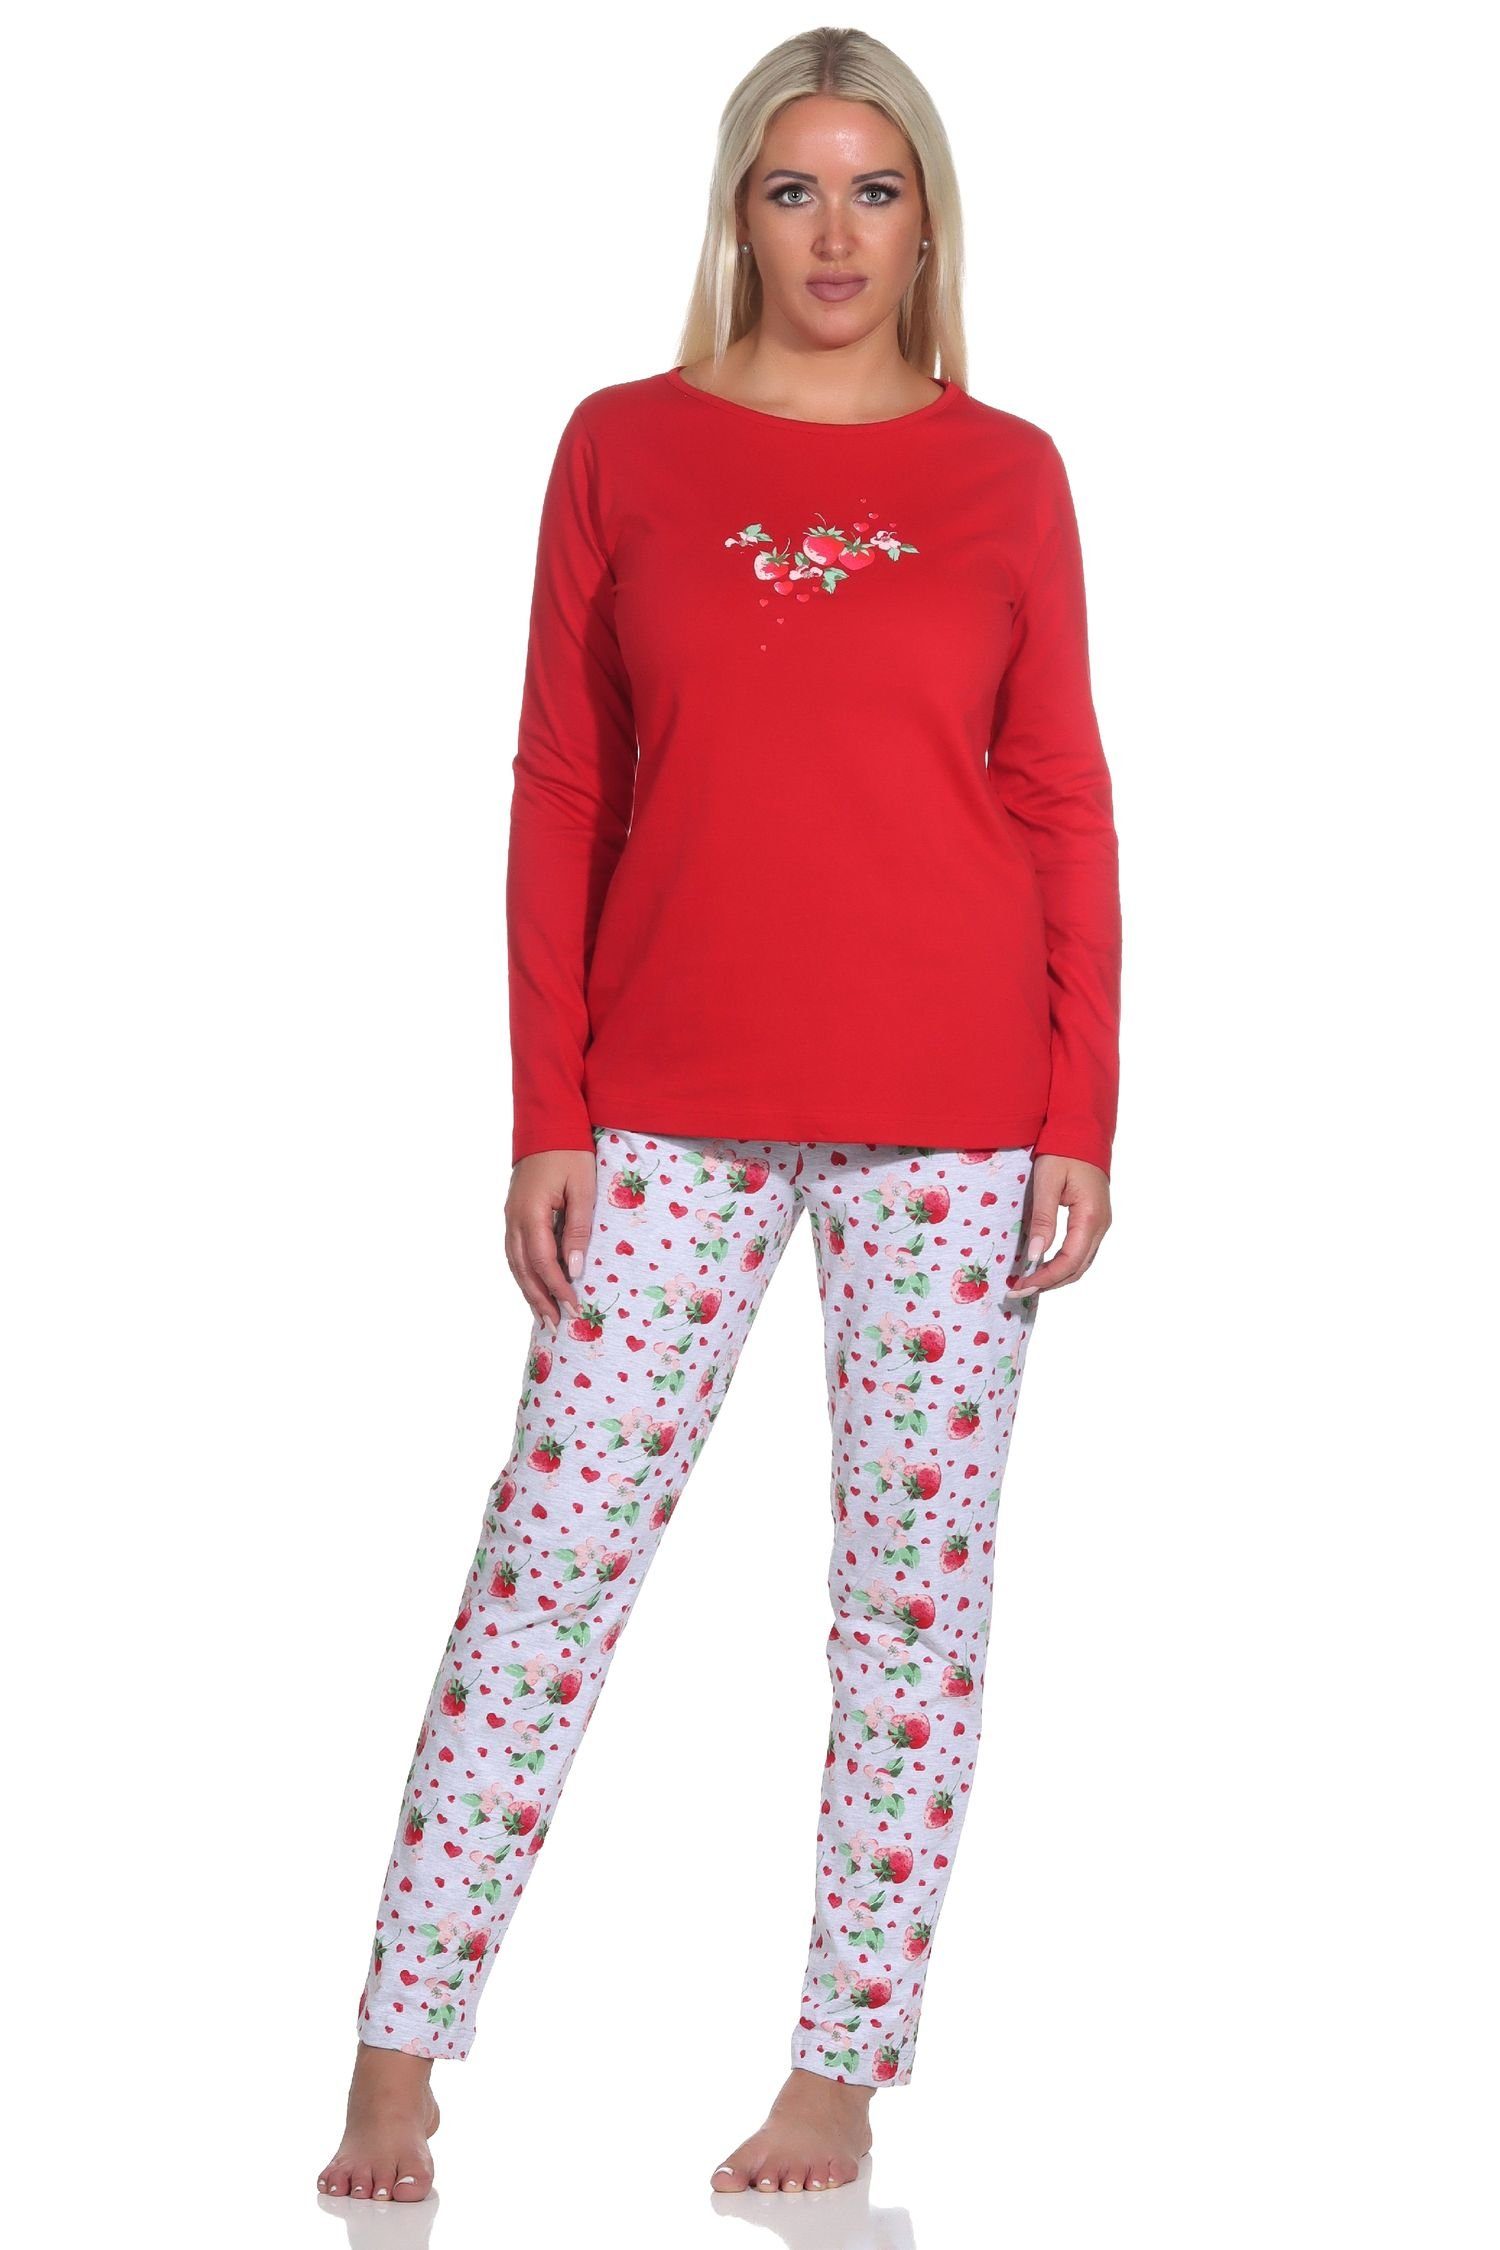 mit Motiv Erdbeeren langarm Pyjama Süsser Schlafanzug Pyjama als Normann Damen rot